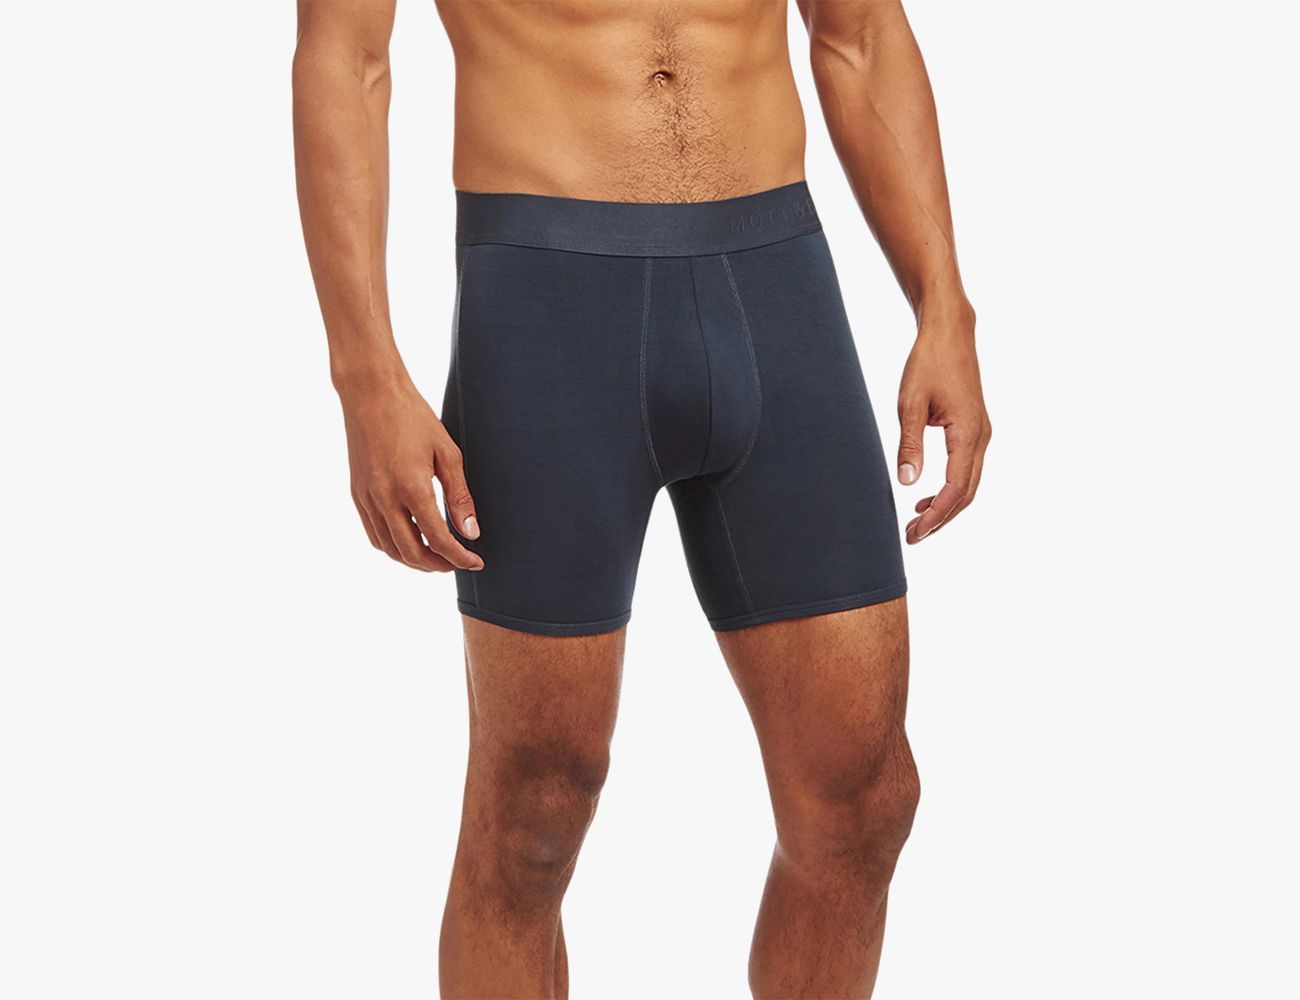 Gespierd hoofdstuk Kerel The Best (and Most Comfortable) Underwear for Men